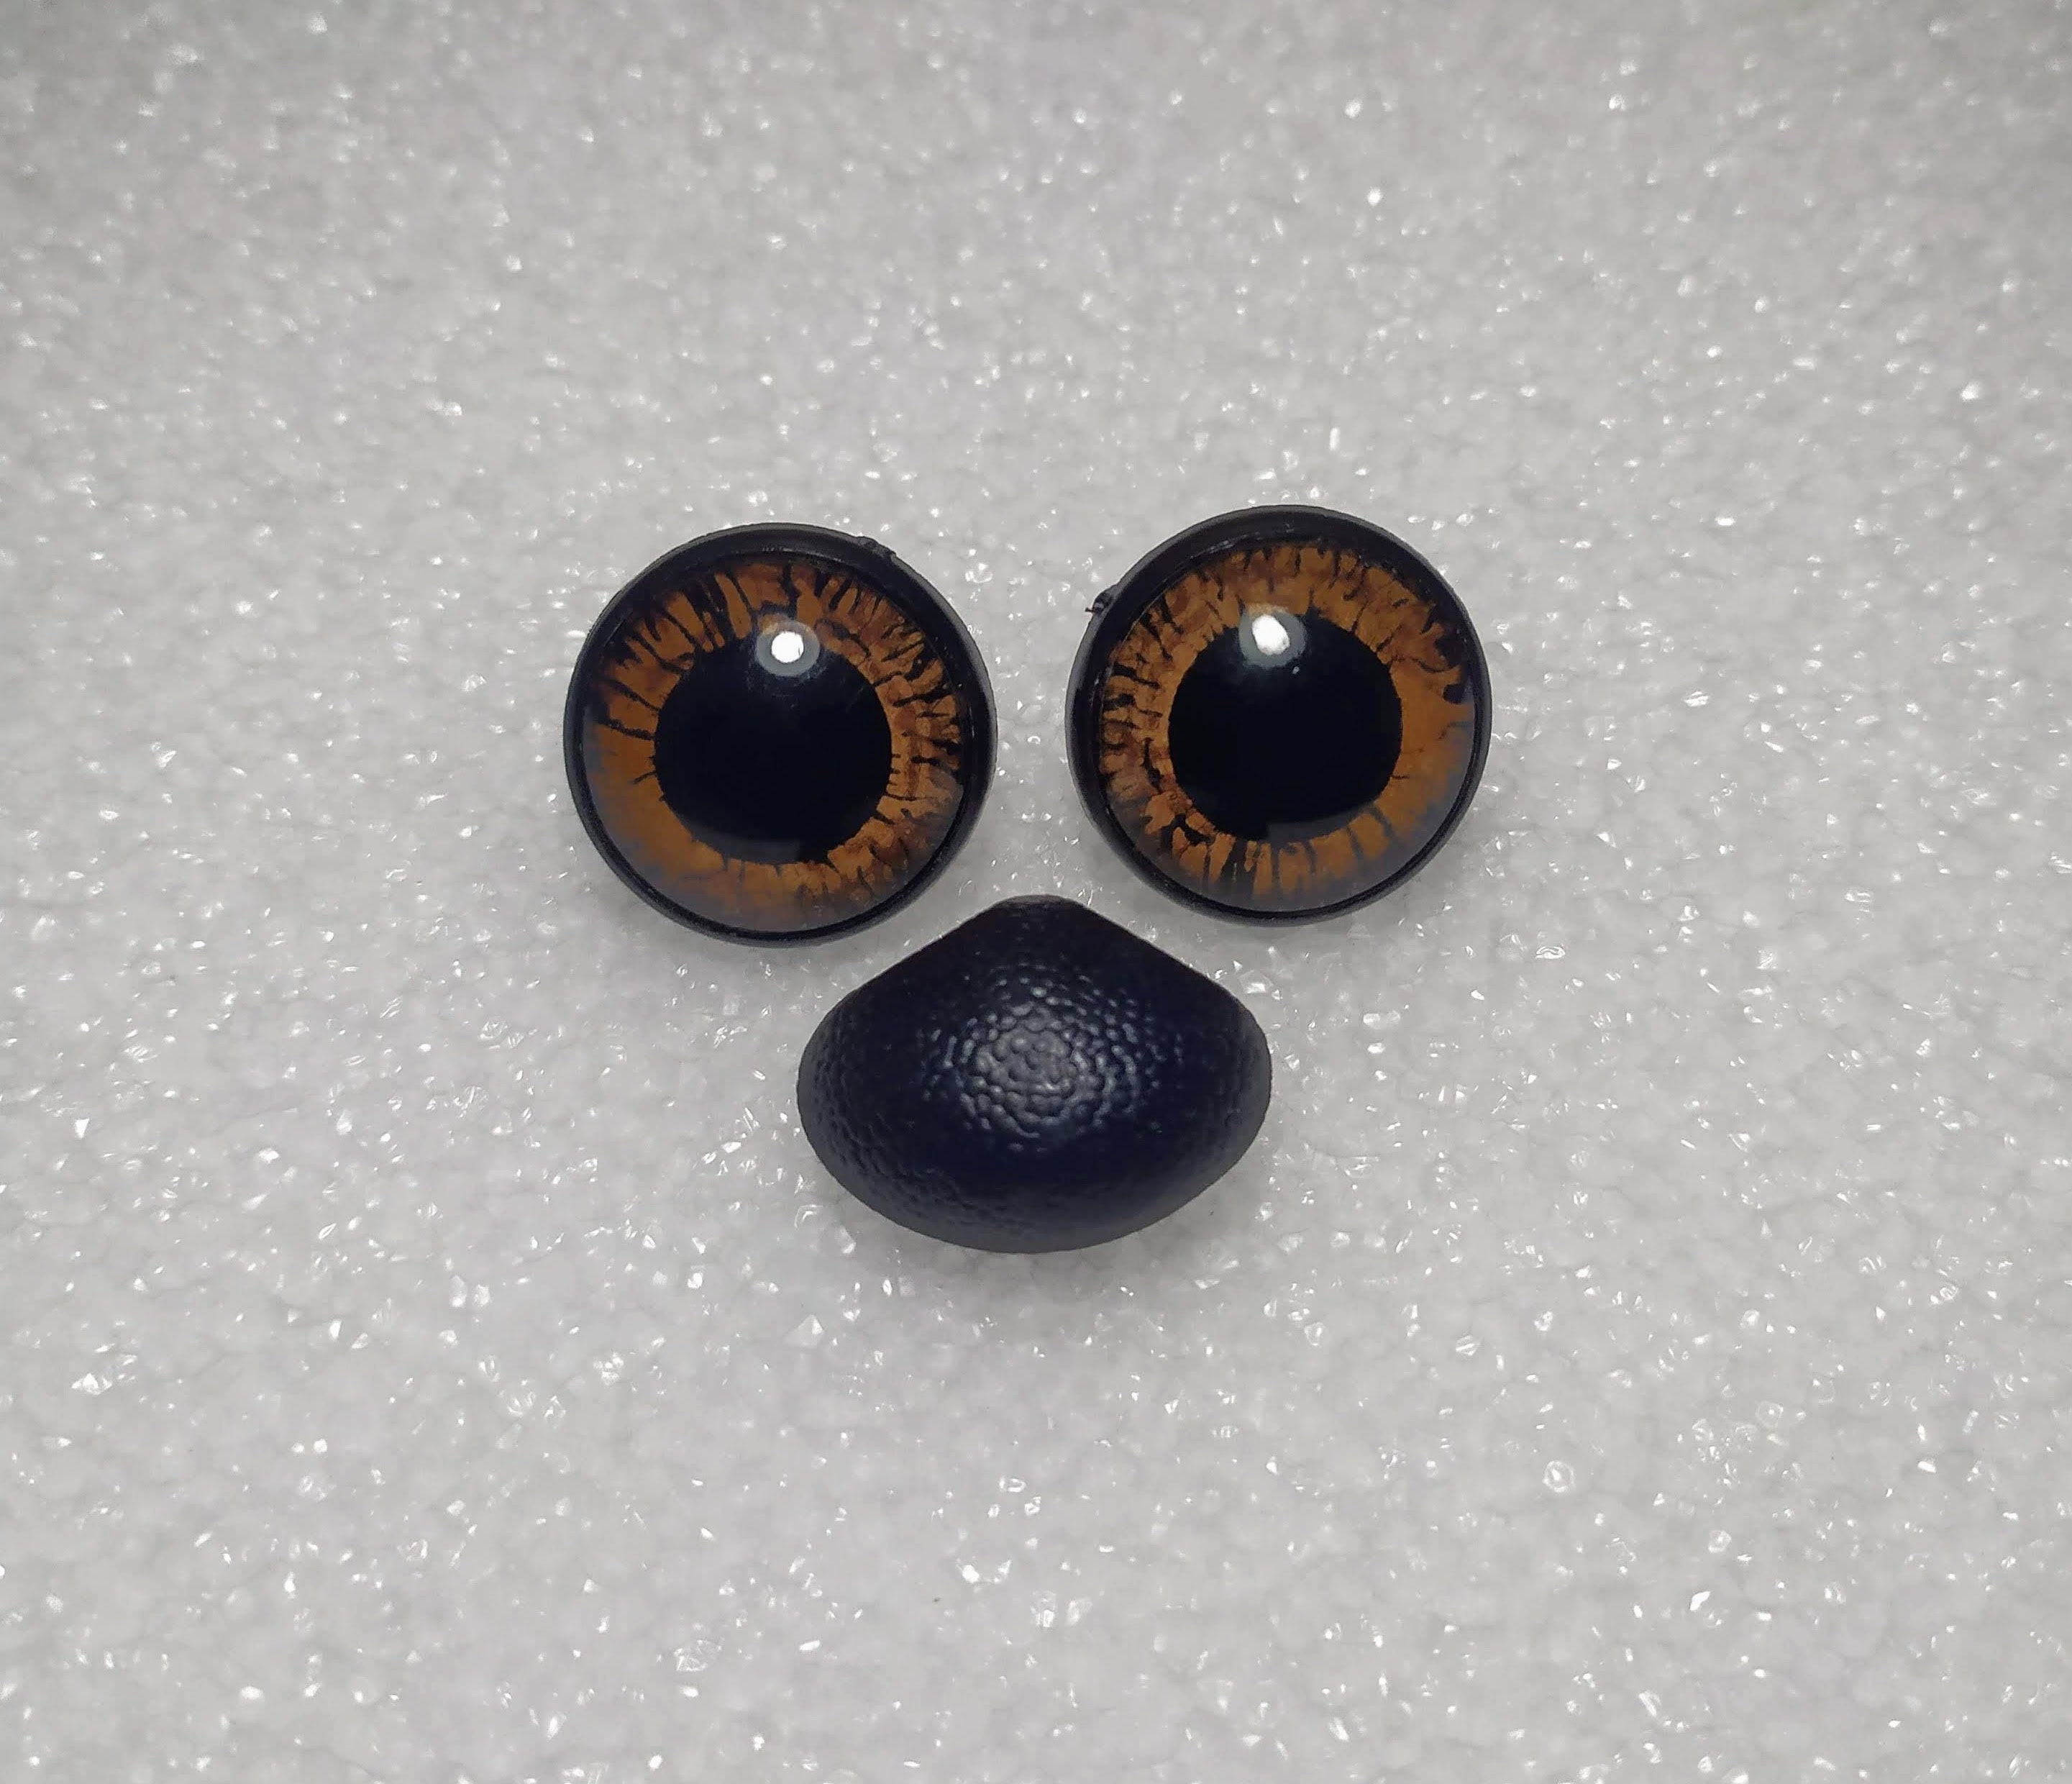 9x12mm Oval Safety Nose/eyes, Plastic Eyes for Stuffed Animals, Amigurumi,  Teddy Bears, Plush Toys Eyes, DIY Dolls Supplies 